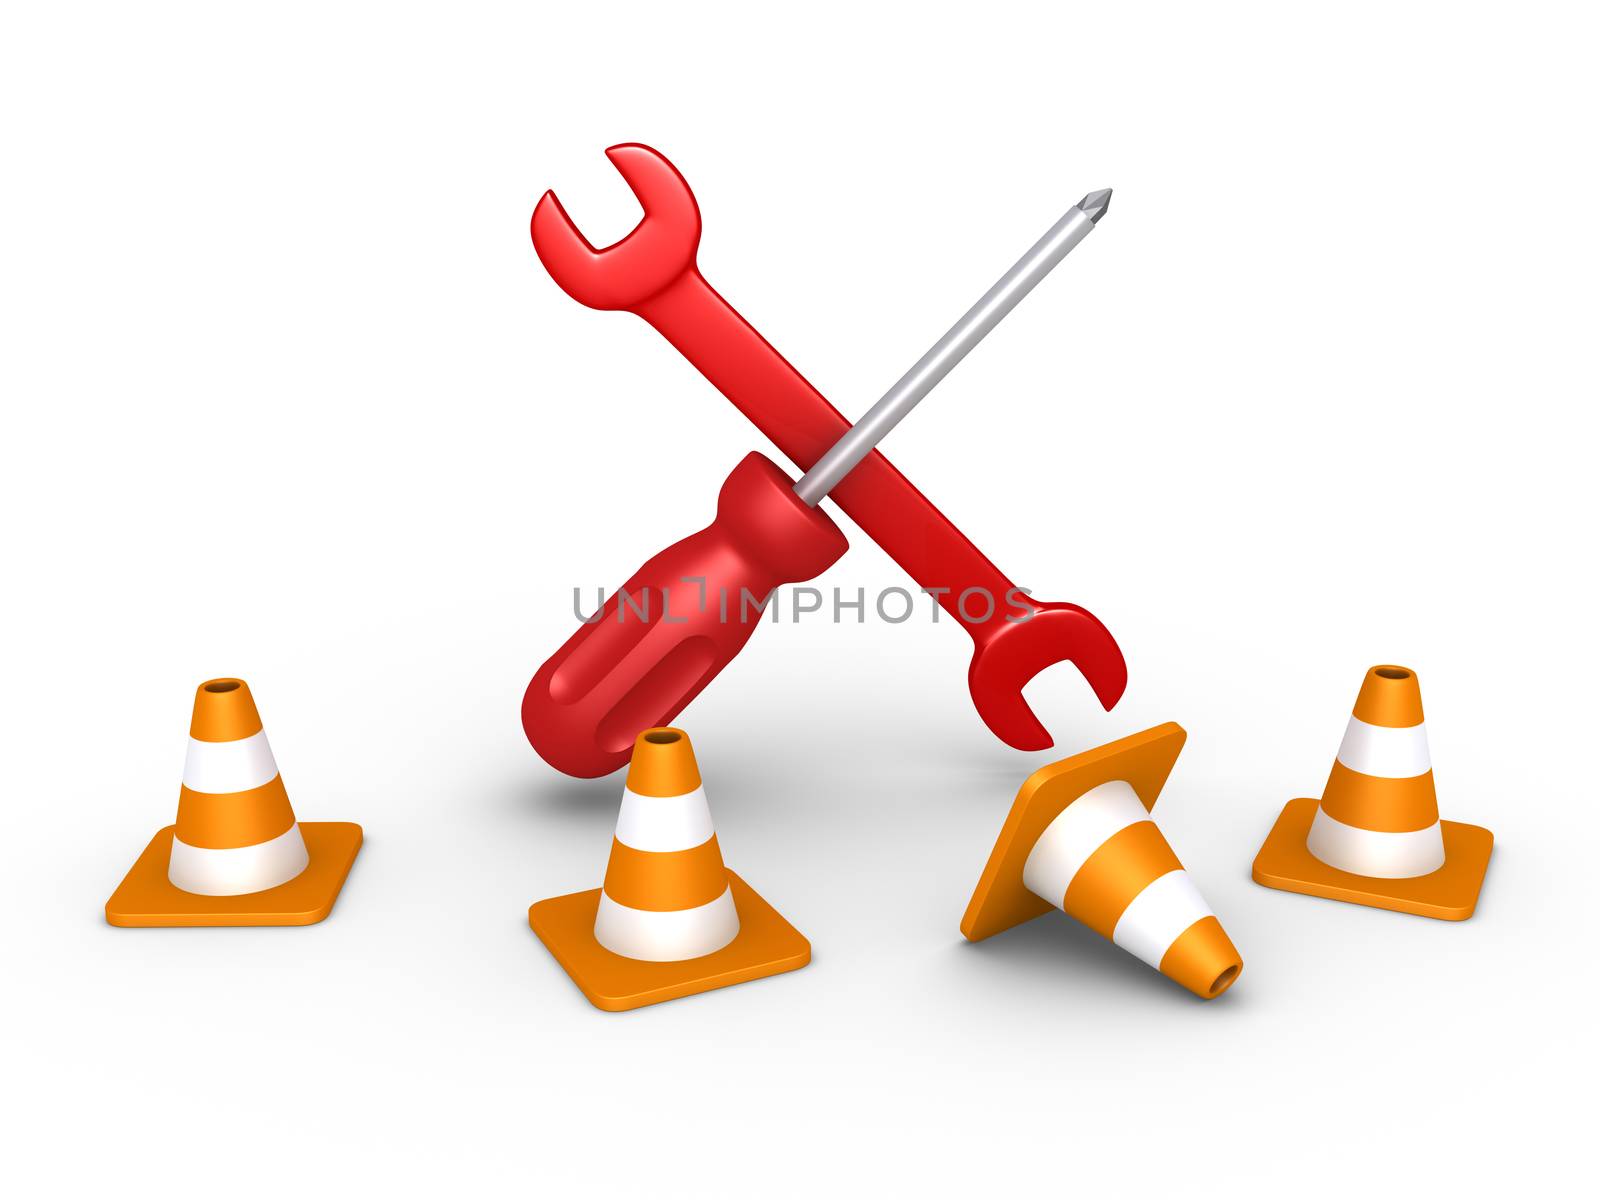 Repair tools behind traffic cones by 6kor3dos